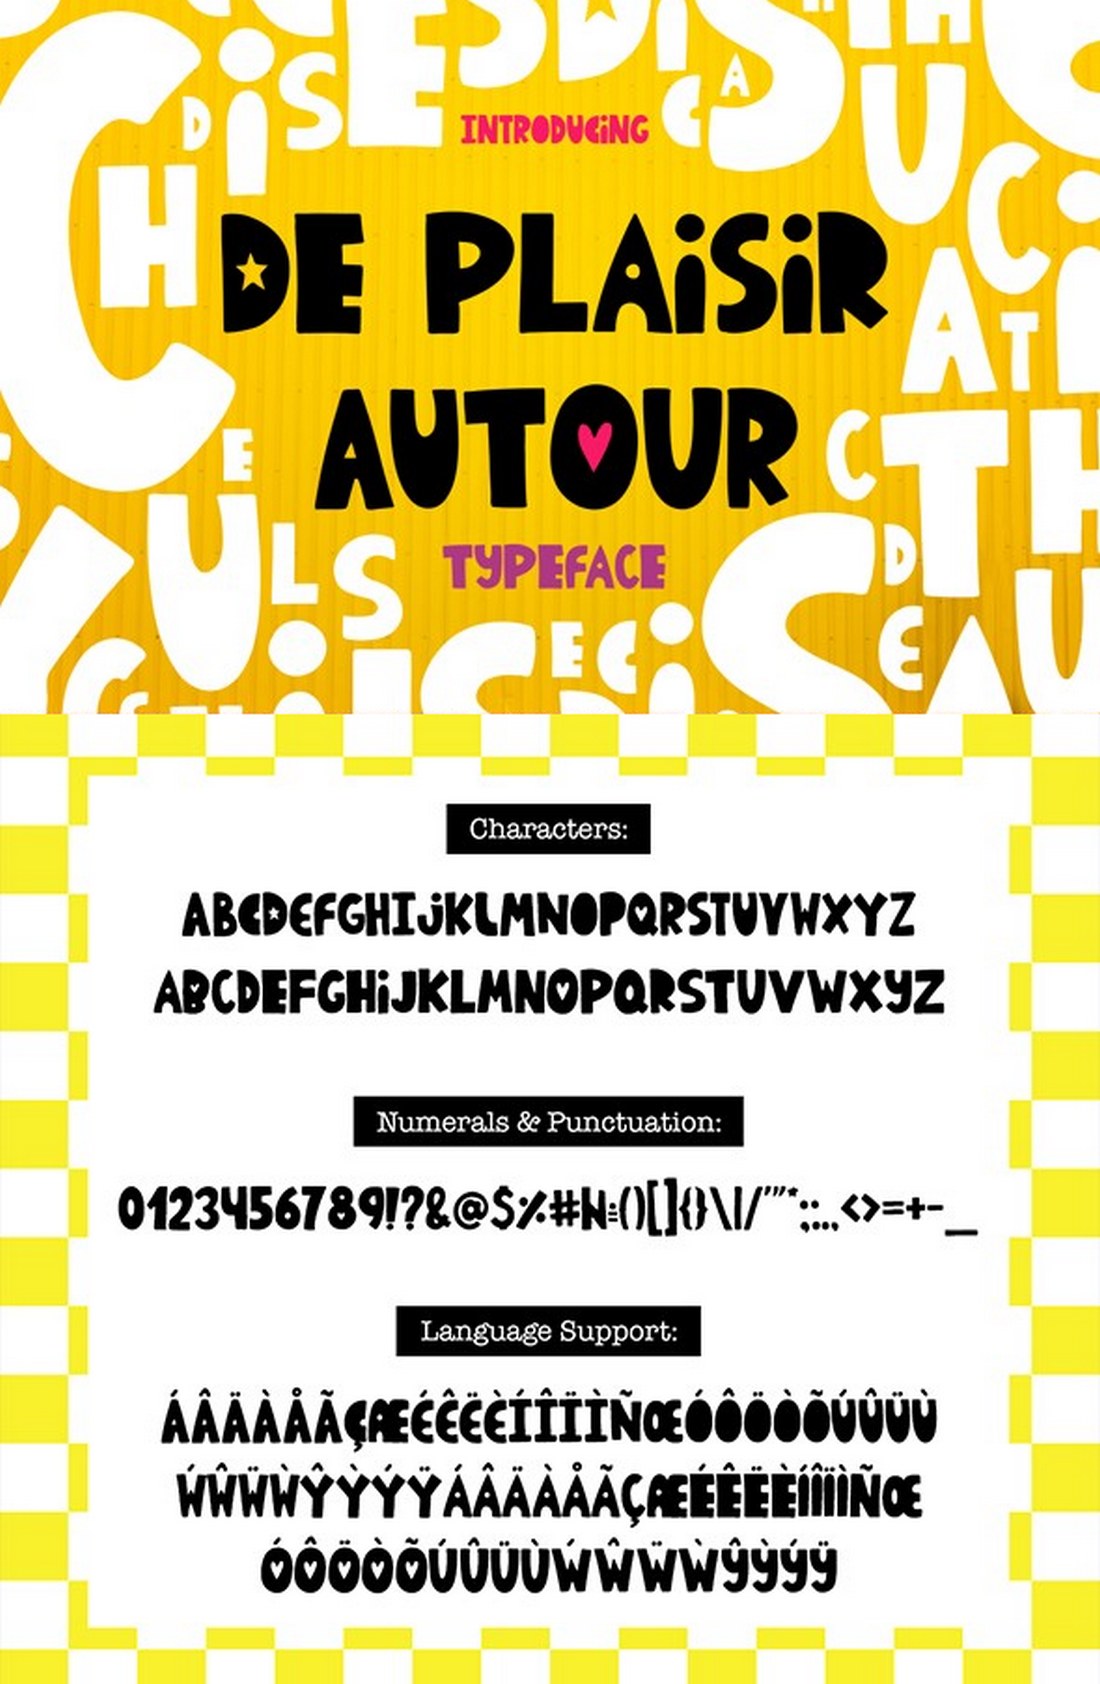 De Plaisir Autour - typeface